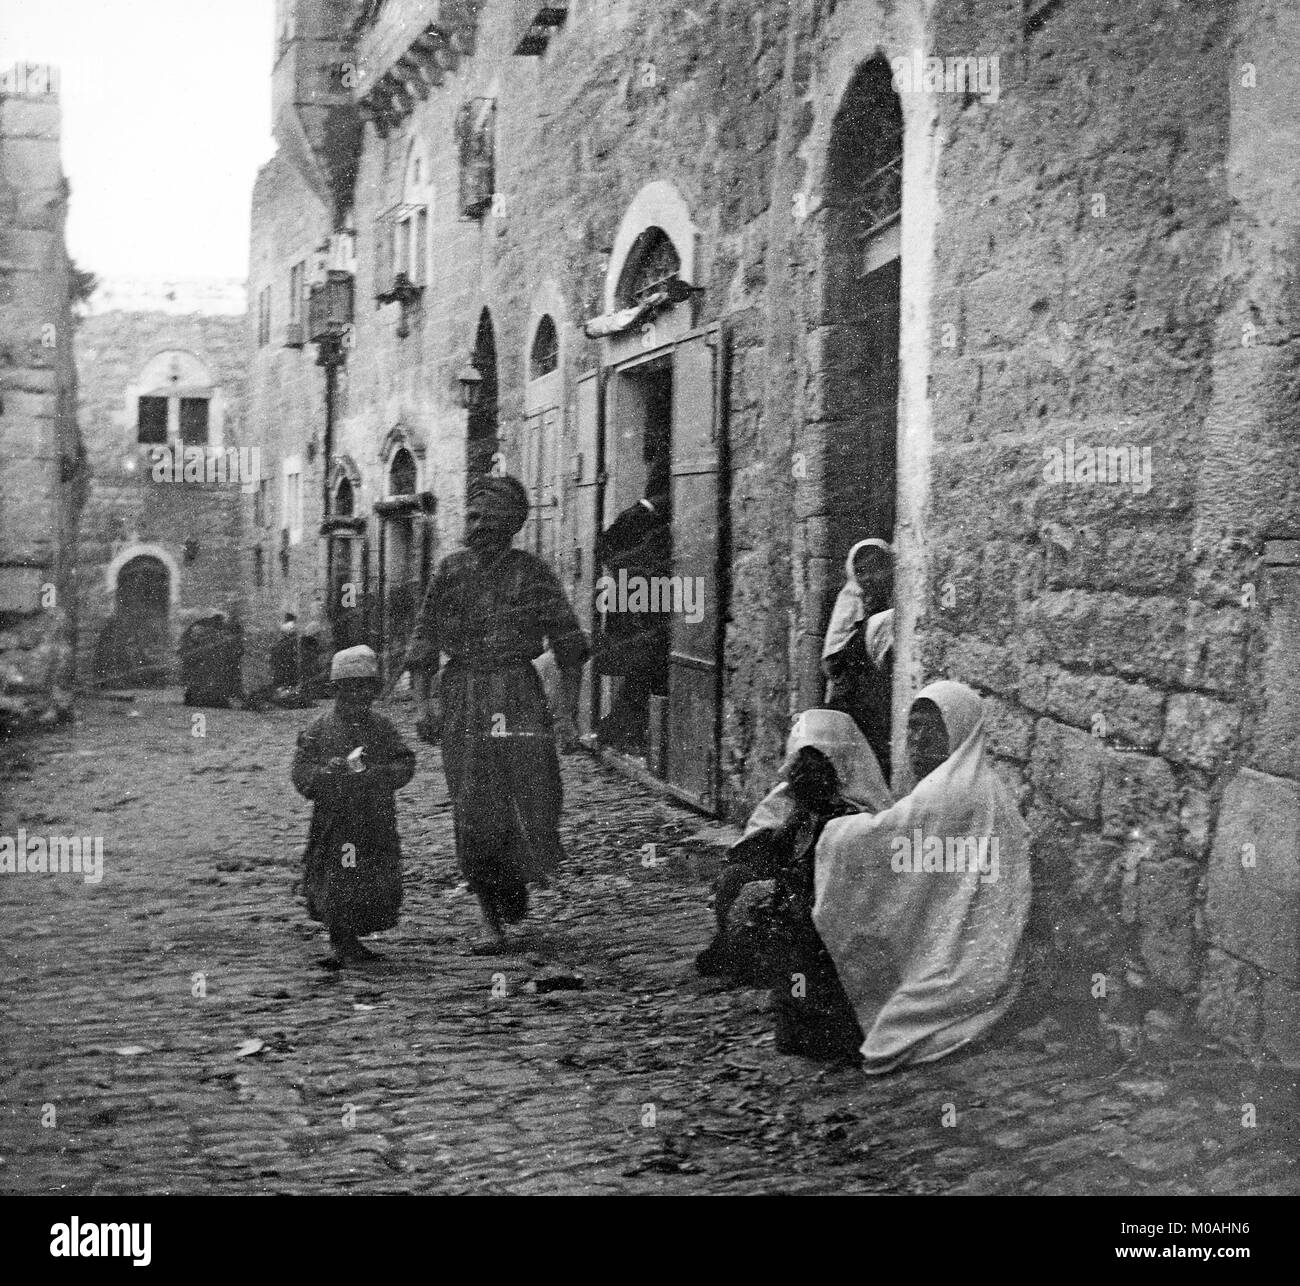 Einen späten 19. oder frühen 20. Jahrhundert schwarz-weiß Foto zeigt eine Straßenszene in Bethlehem in Palästina, oder modernen Israel. Ein Mann gesehen werden kann zu Fuß durch die Straße mit seinem Sohn, während Frauen sitzen auf der Seite der Strasse oder in Hauseingängen. Stockfoto